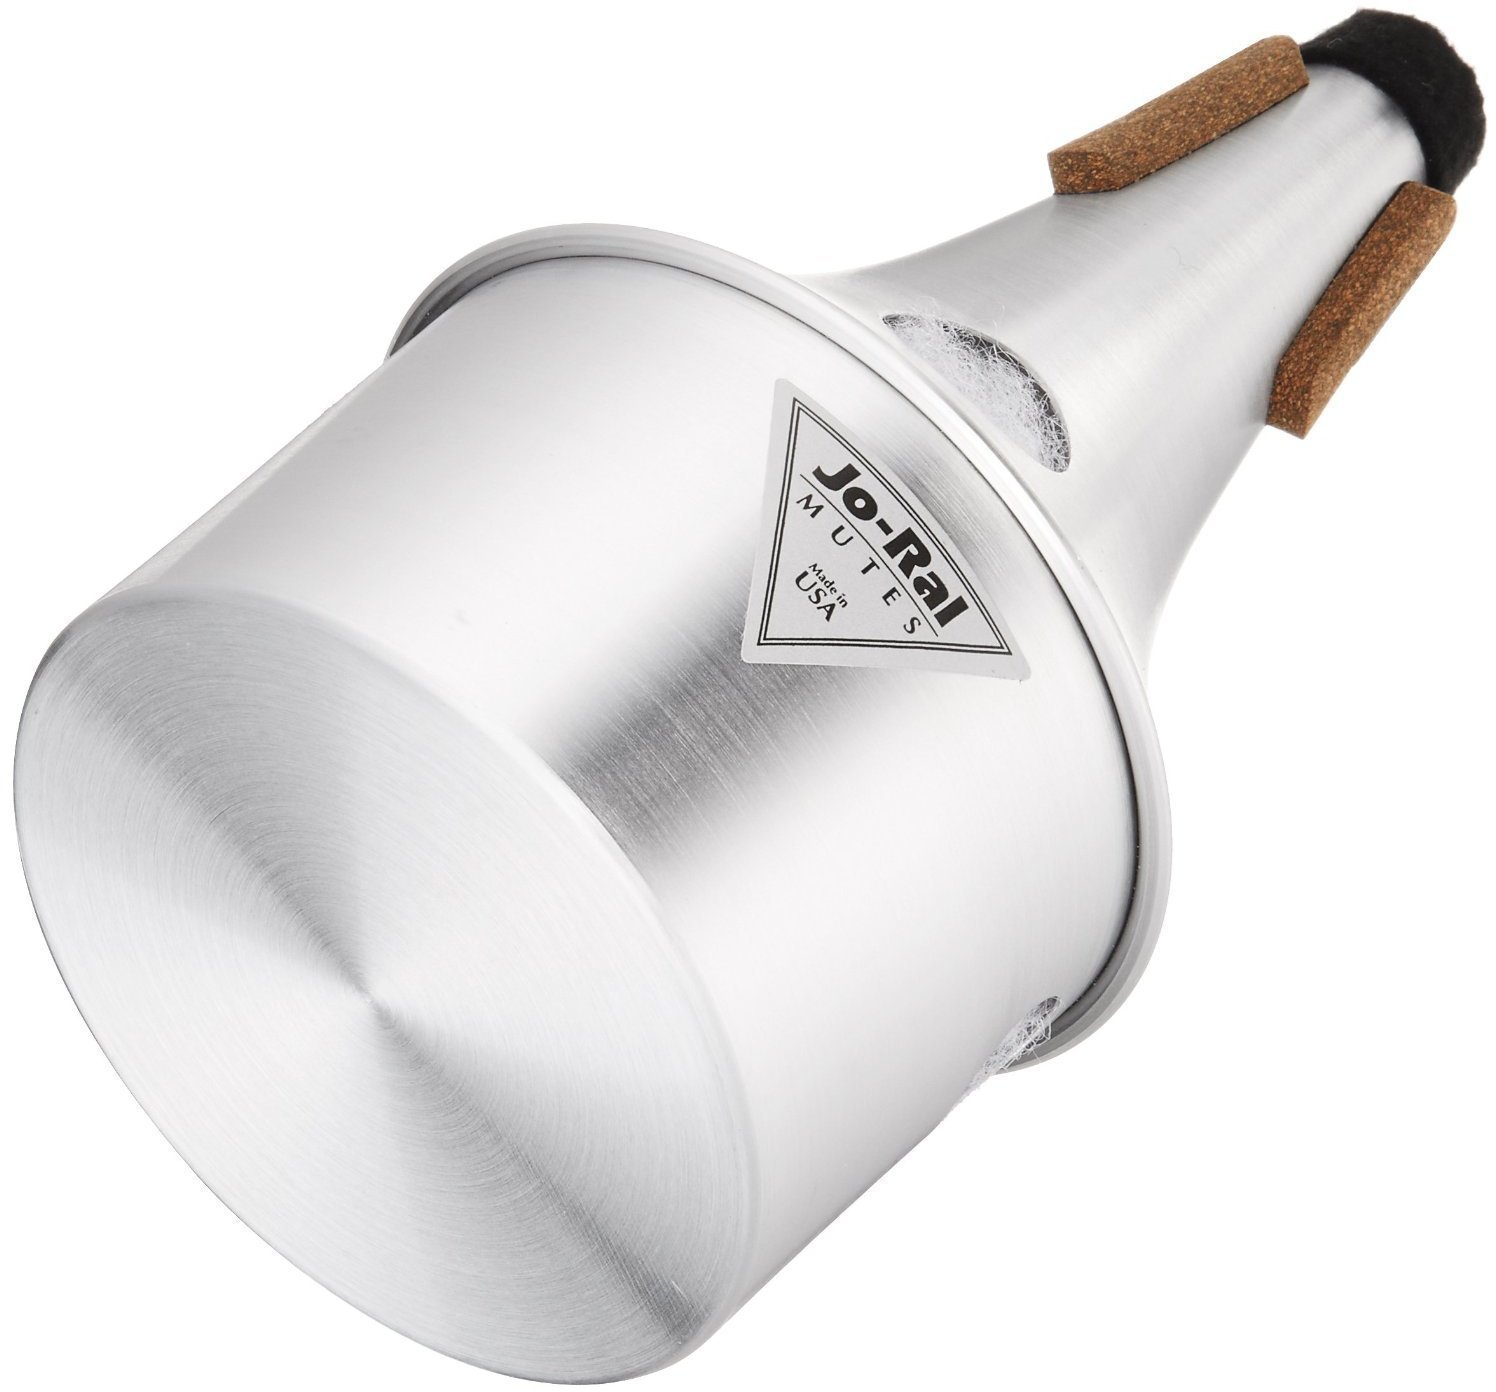 Dämpfer für Trompete Jo-Ral Trumpet Bucket Aluminium